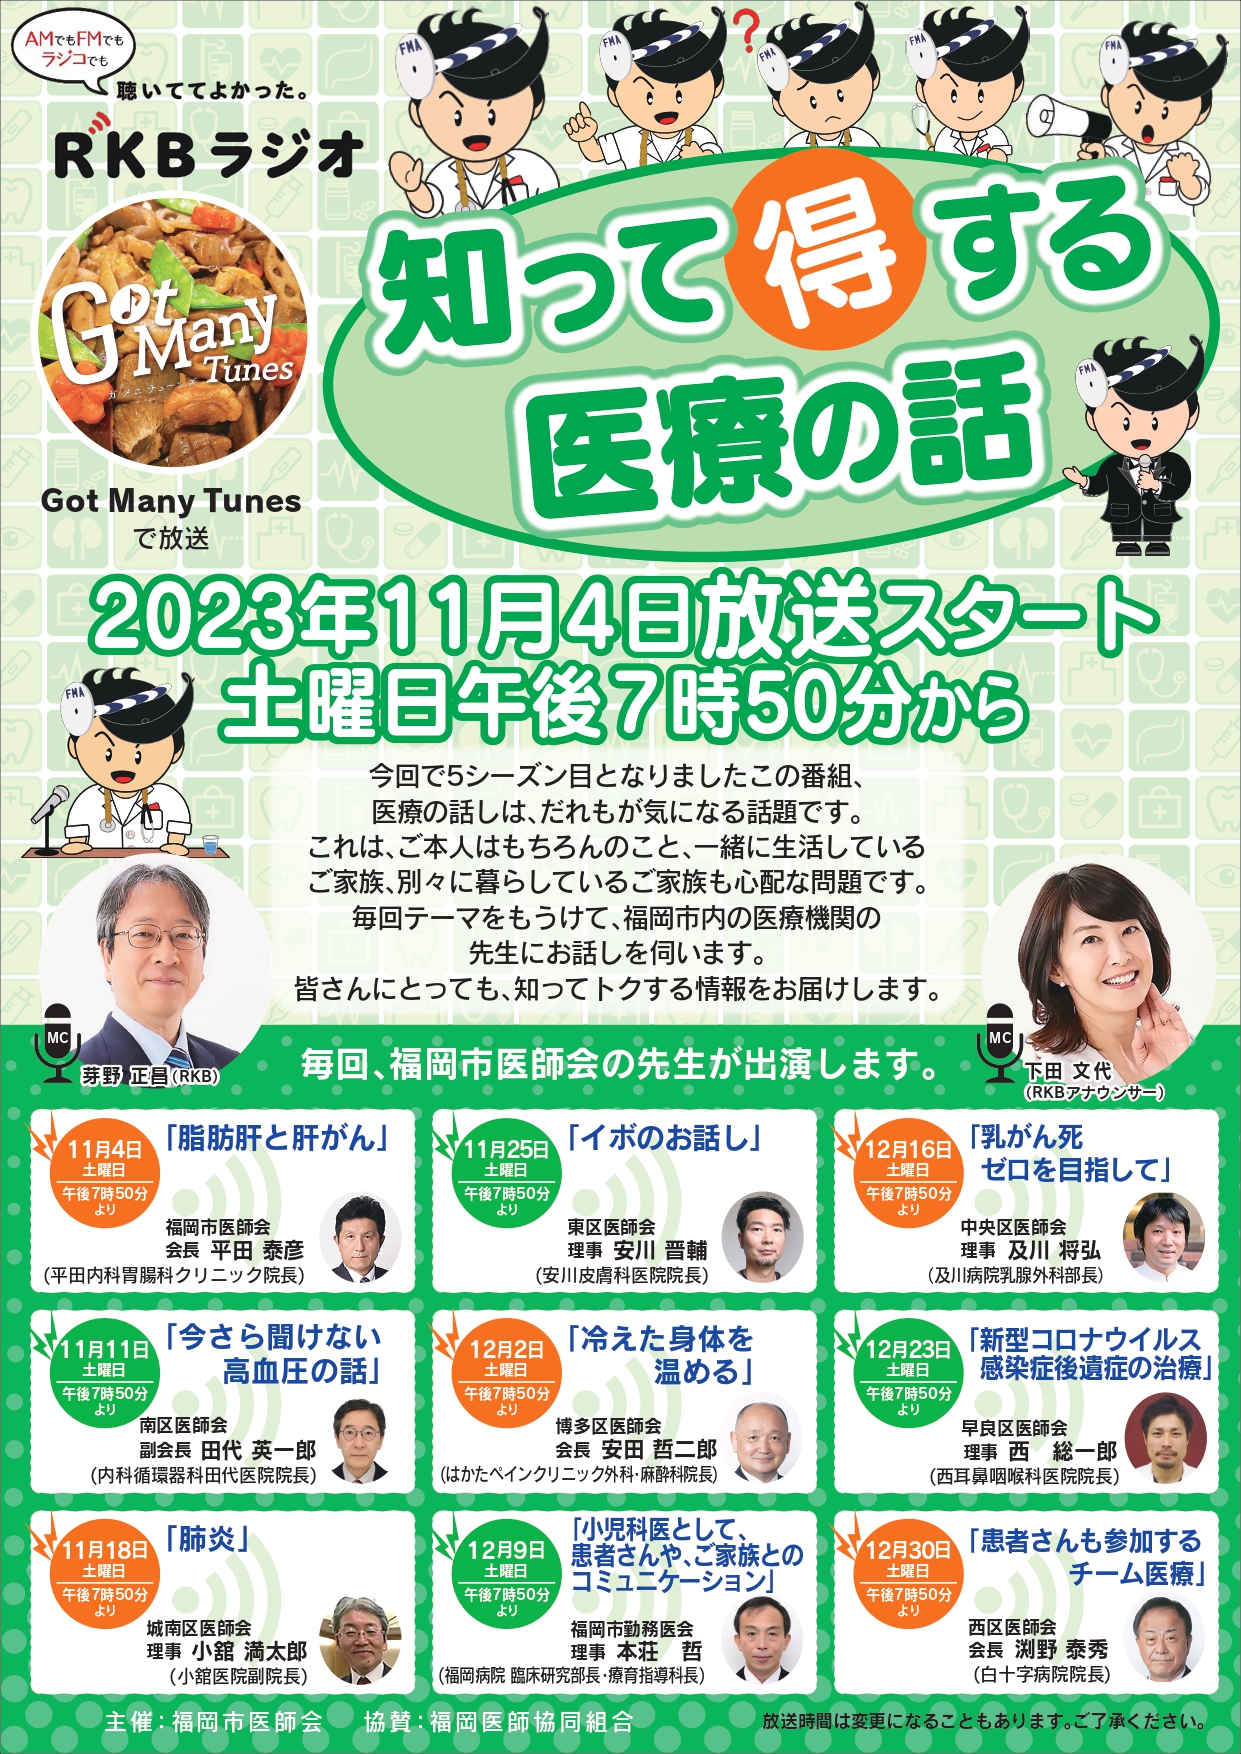 11月4日(土)午後7時50分～ＲＫＢラジオで福岡市医師会の番組がはじまります。